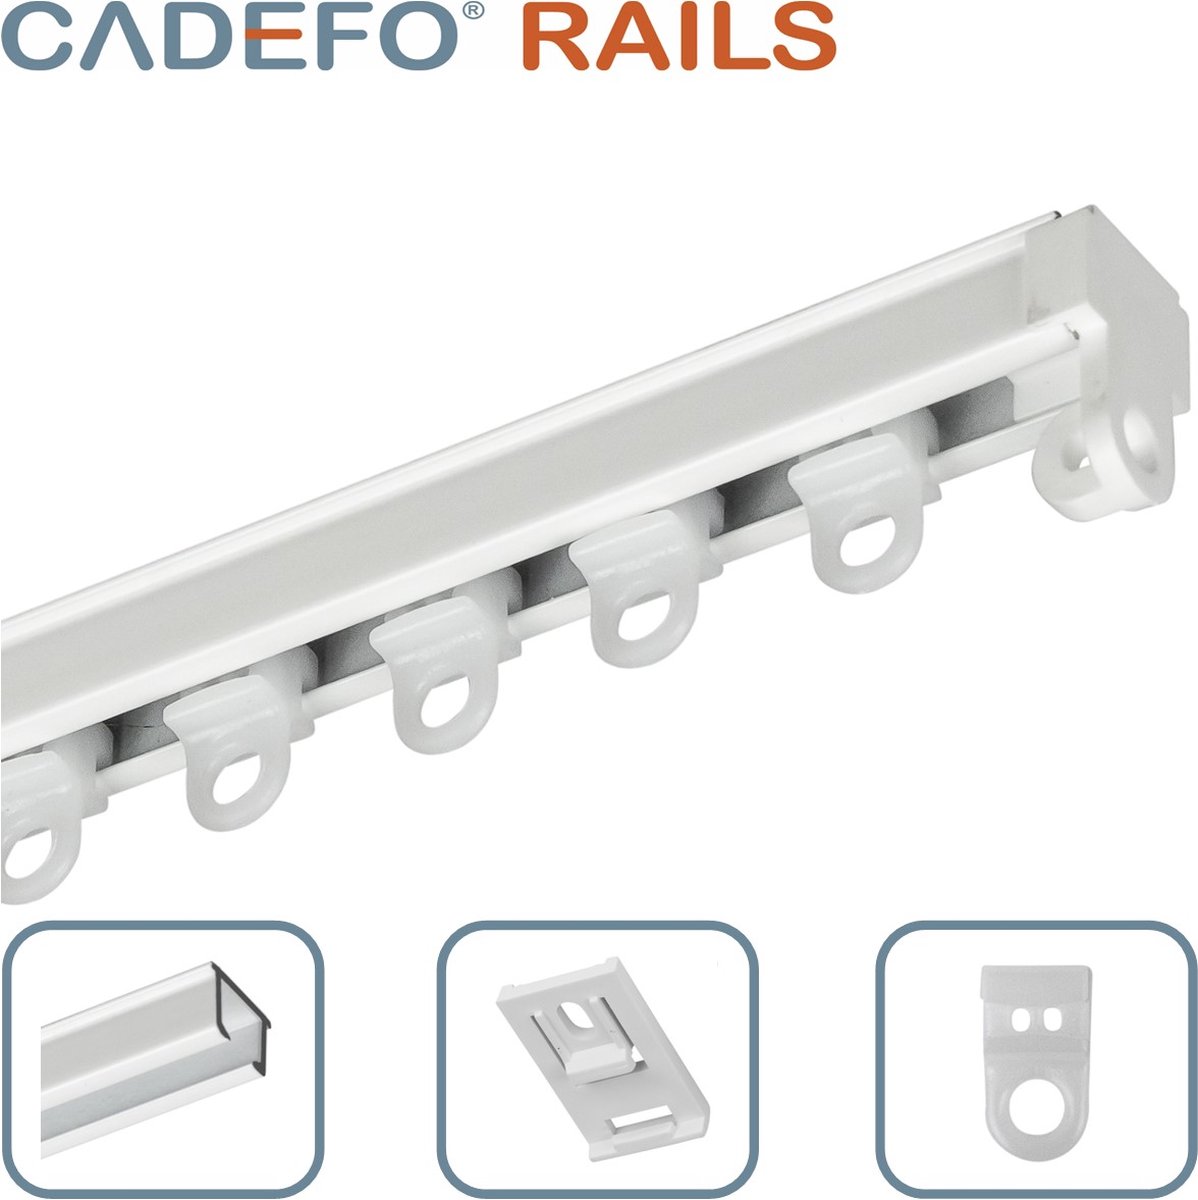 CADEFO RAILS (401 - 450 cm) Gordijnrails - Compleet op maat! - UIT 1 STUK - Leverbaar tot 6 meter - Plafondbevestiging - Lengte 419 cm